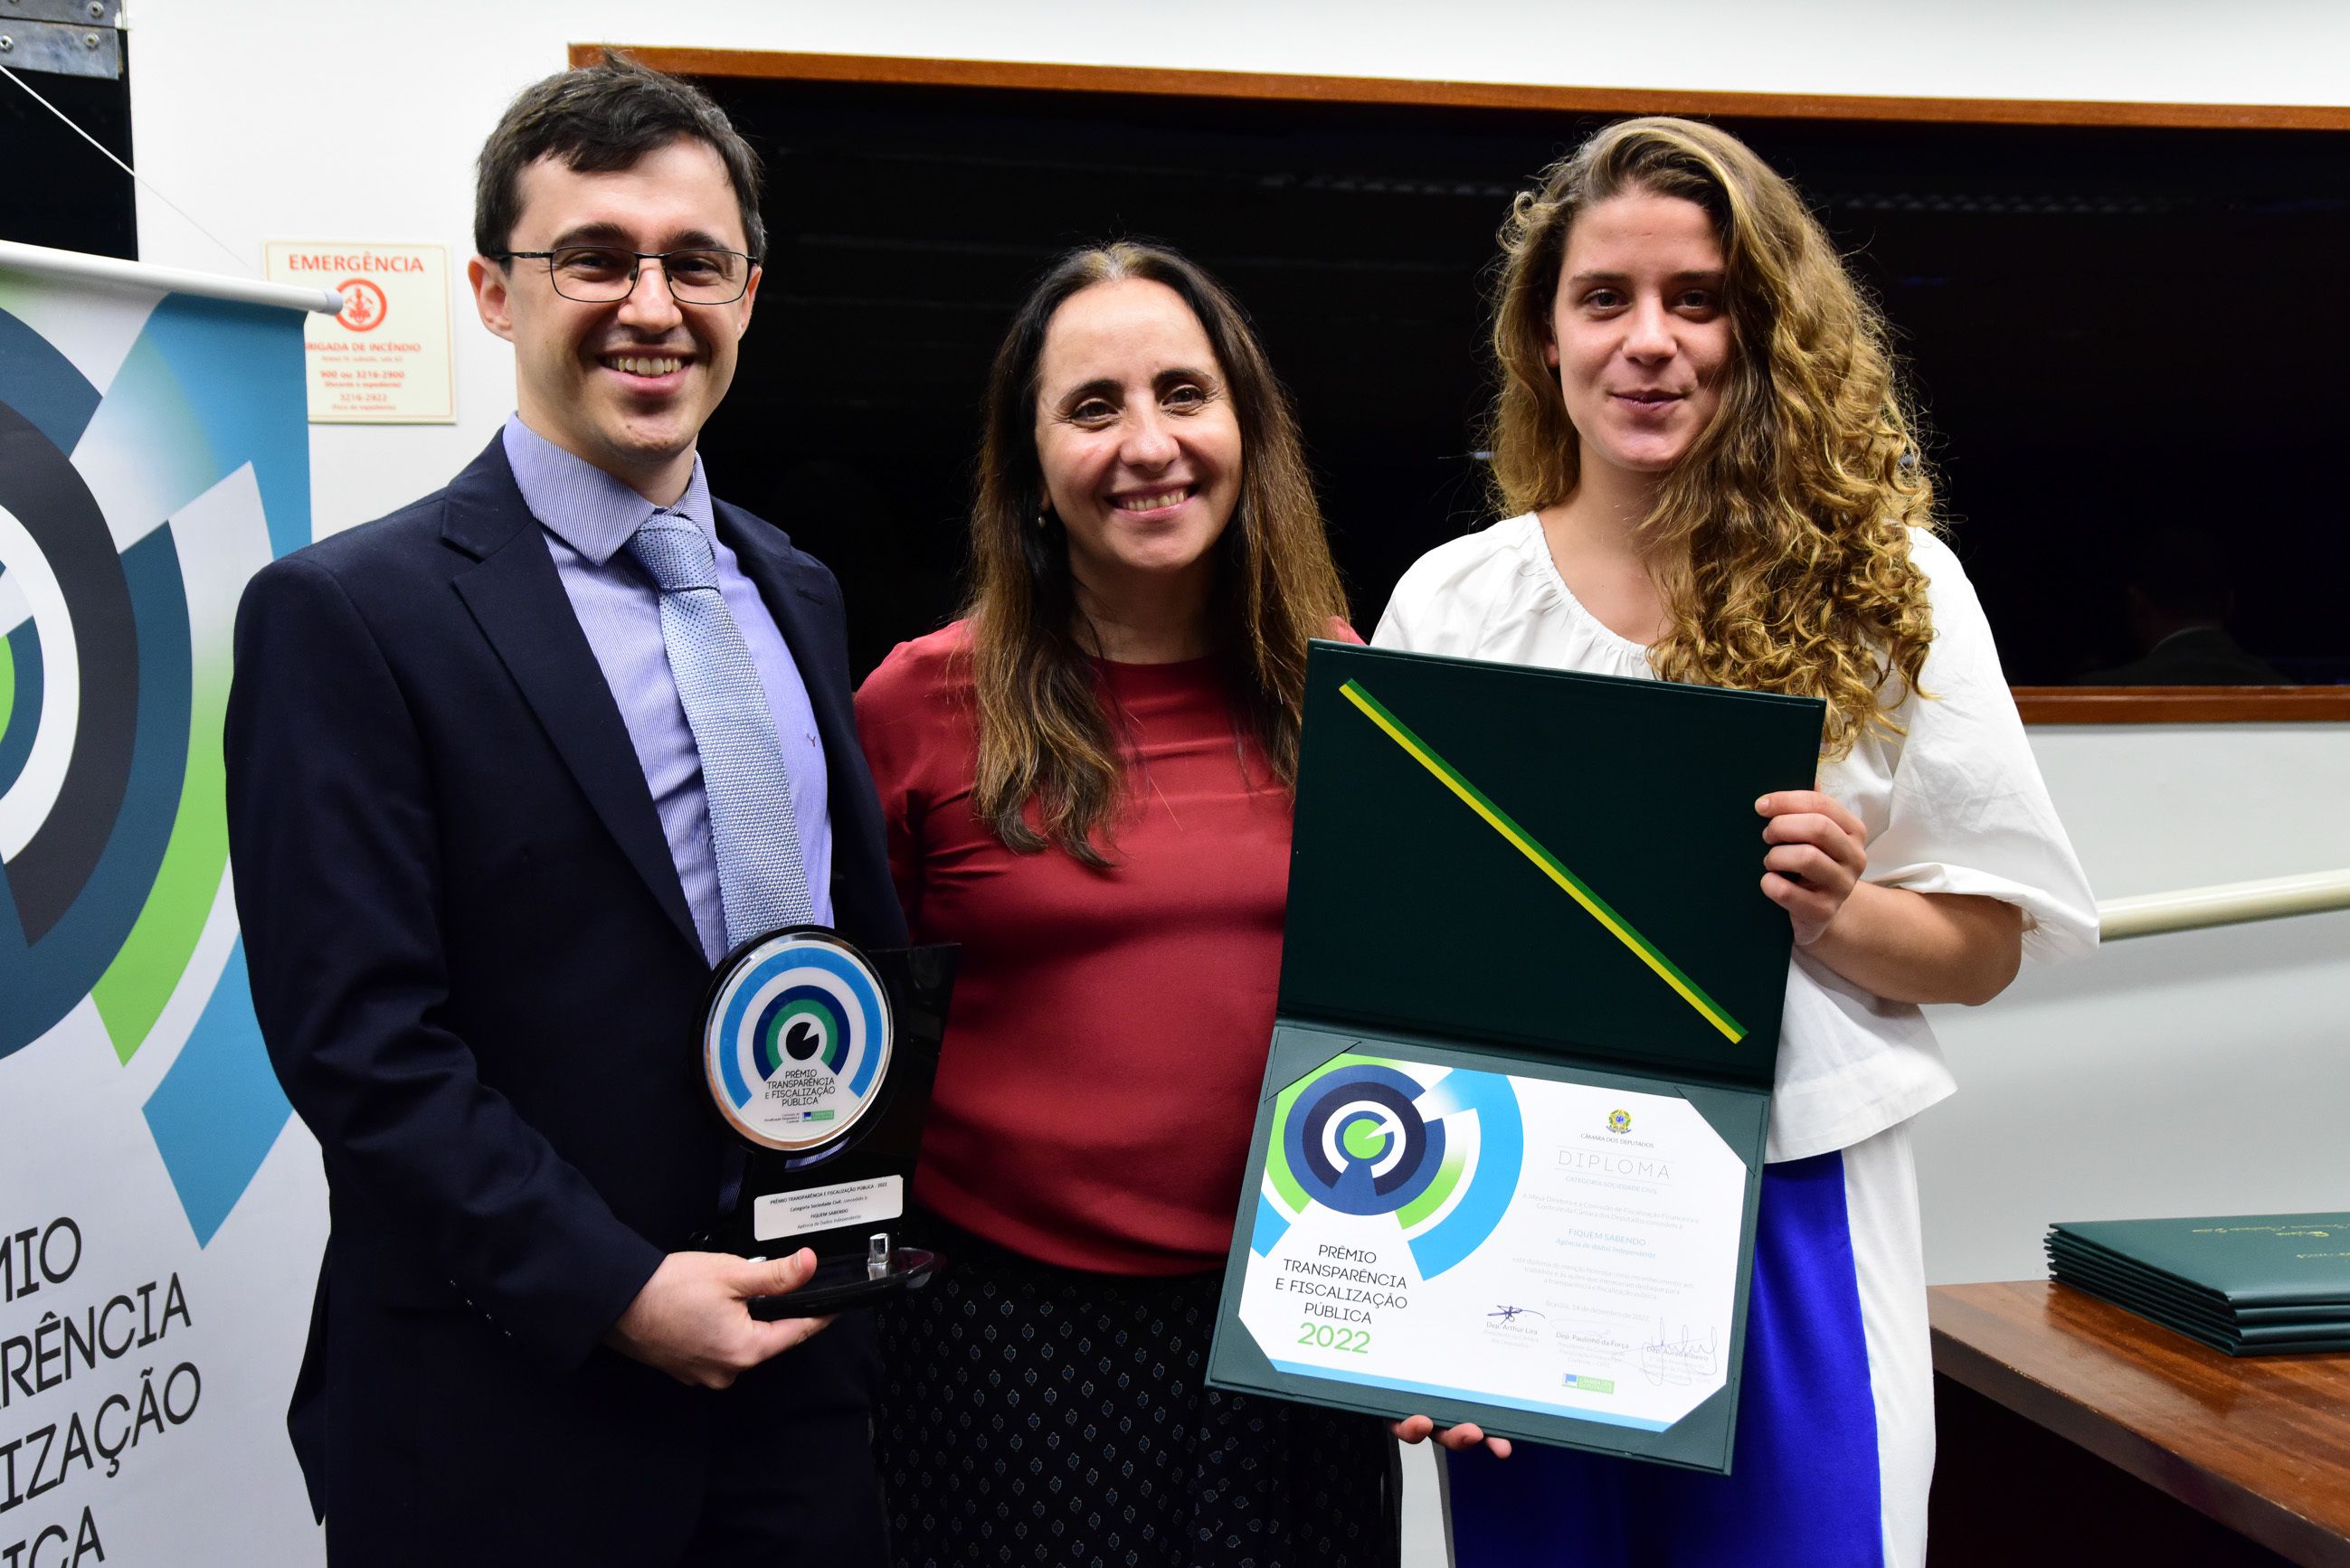 Maria Vitória e Bruno Morassutti recebendo o Prêmio Transparência e Fiscalização Pública 2022